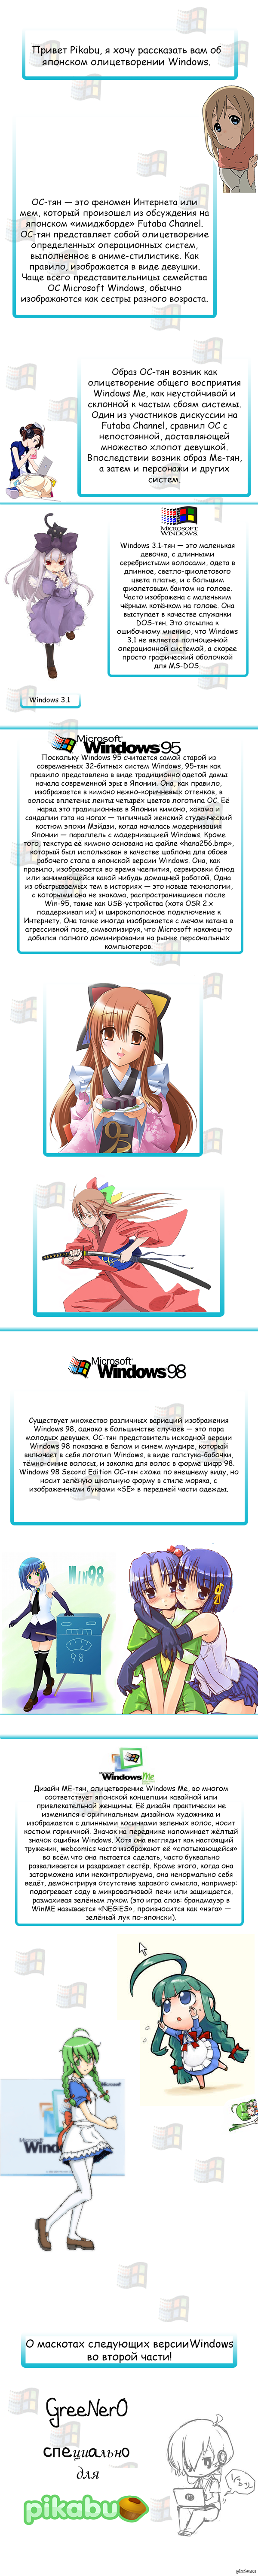 Windows-! [-1] 